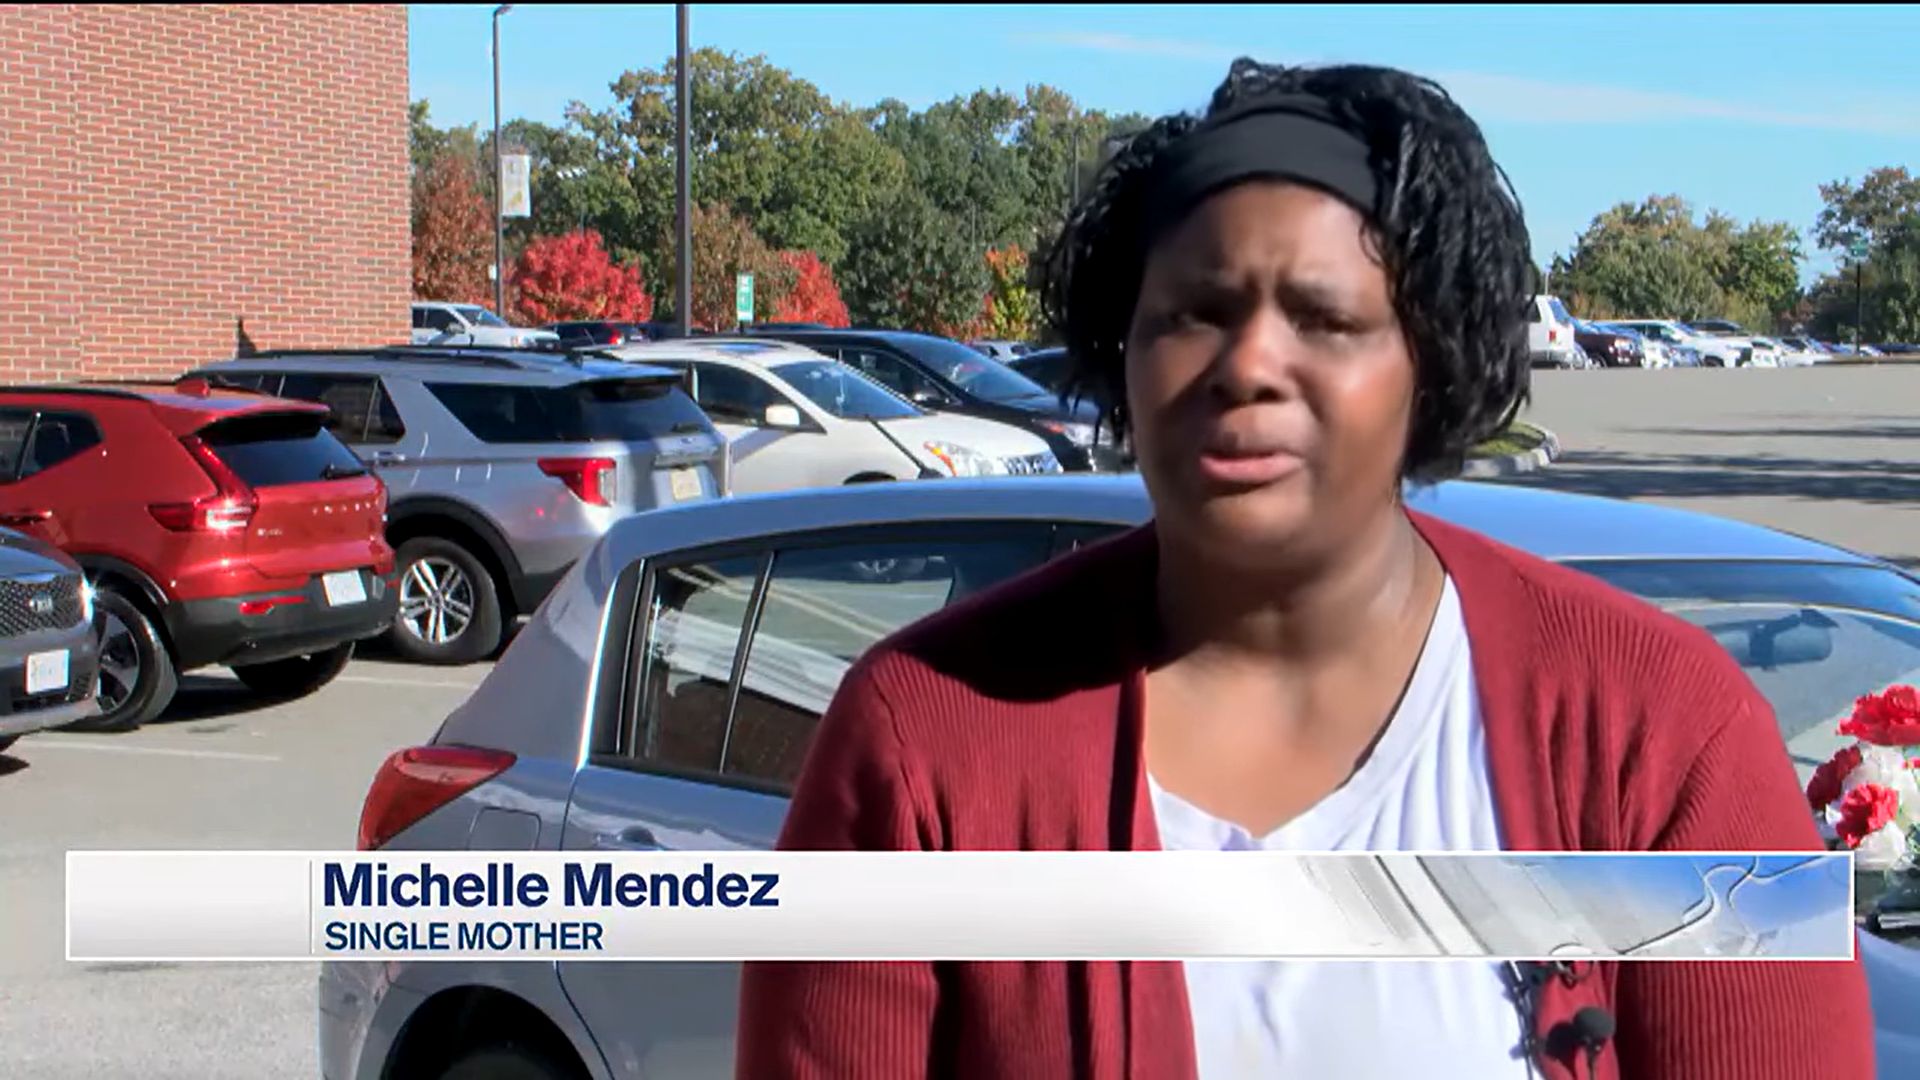 Entrevista com Michelle Mendez, mãe solo que ganhou doação de carro reformado por estudantes